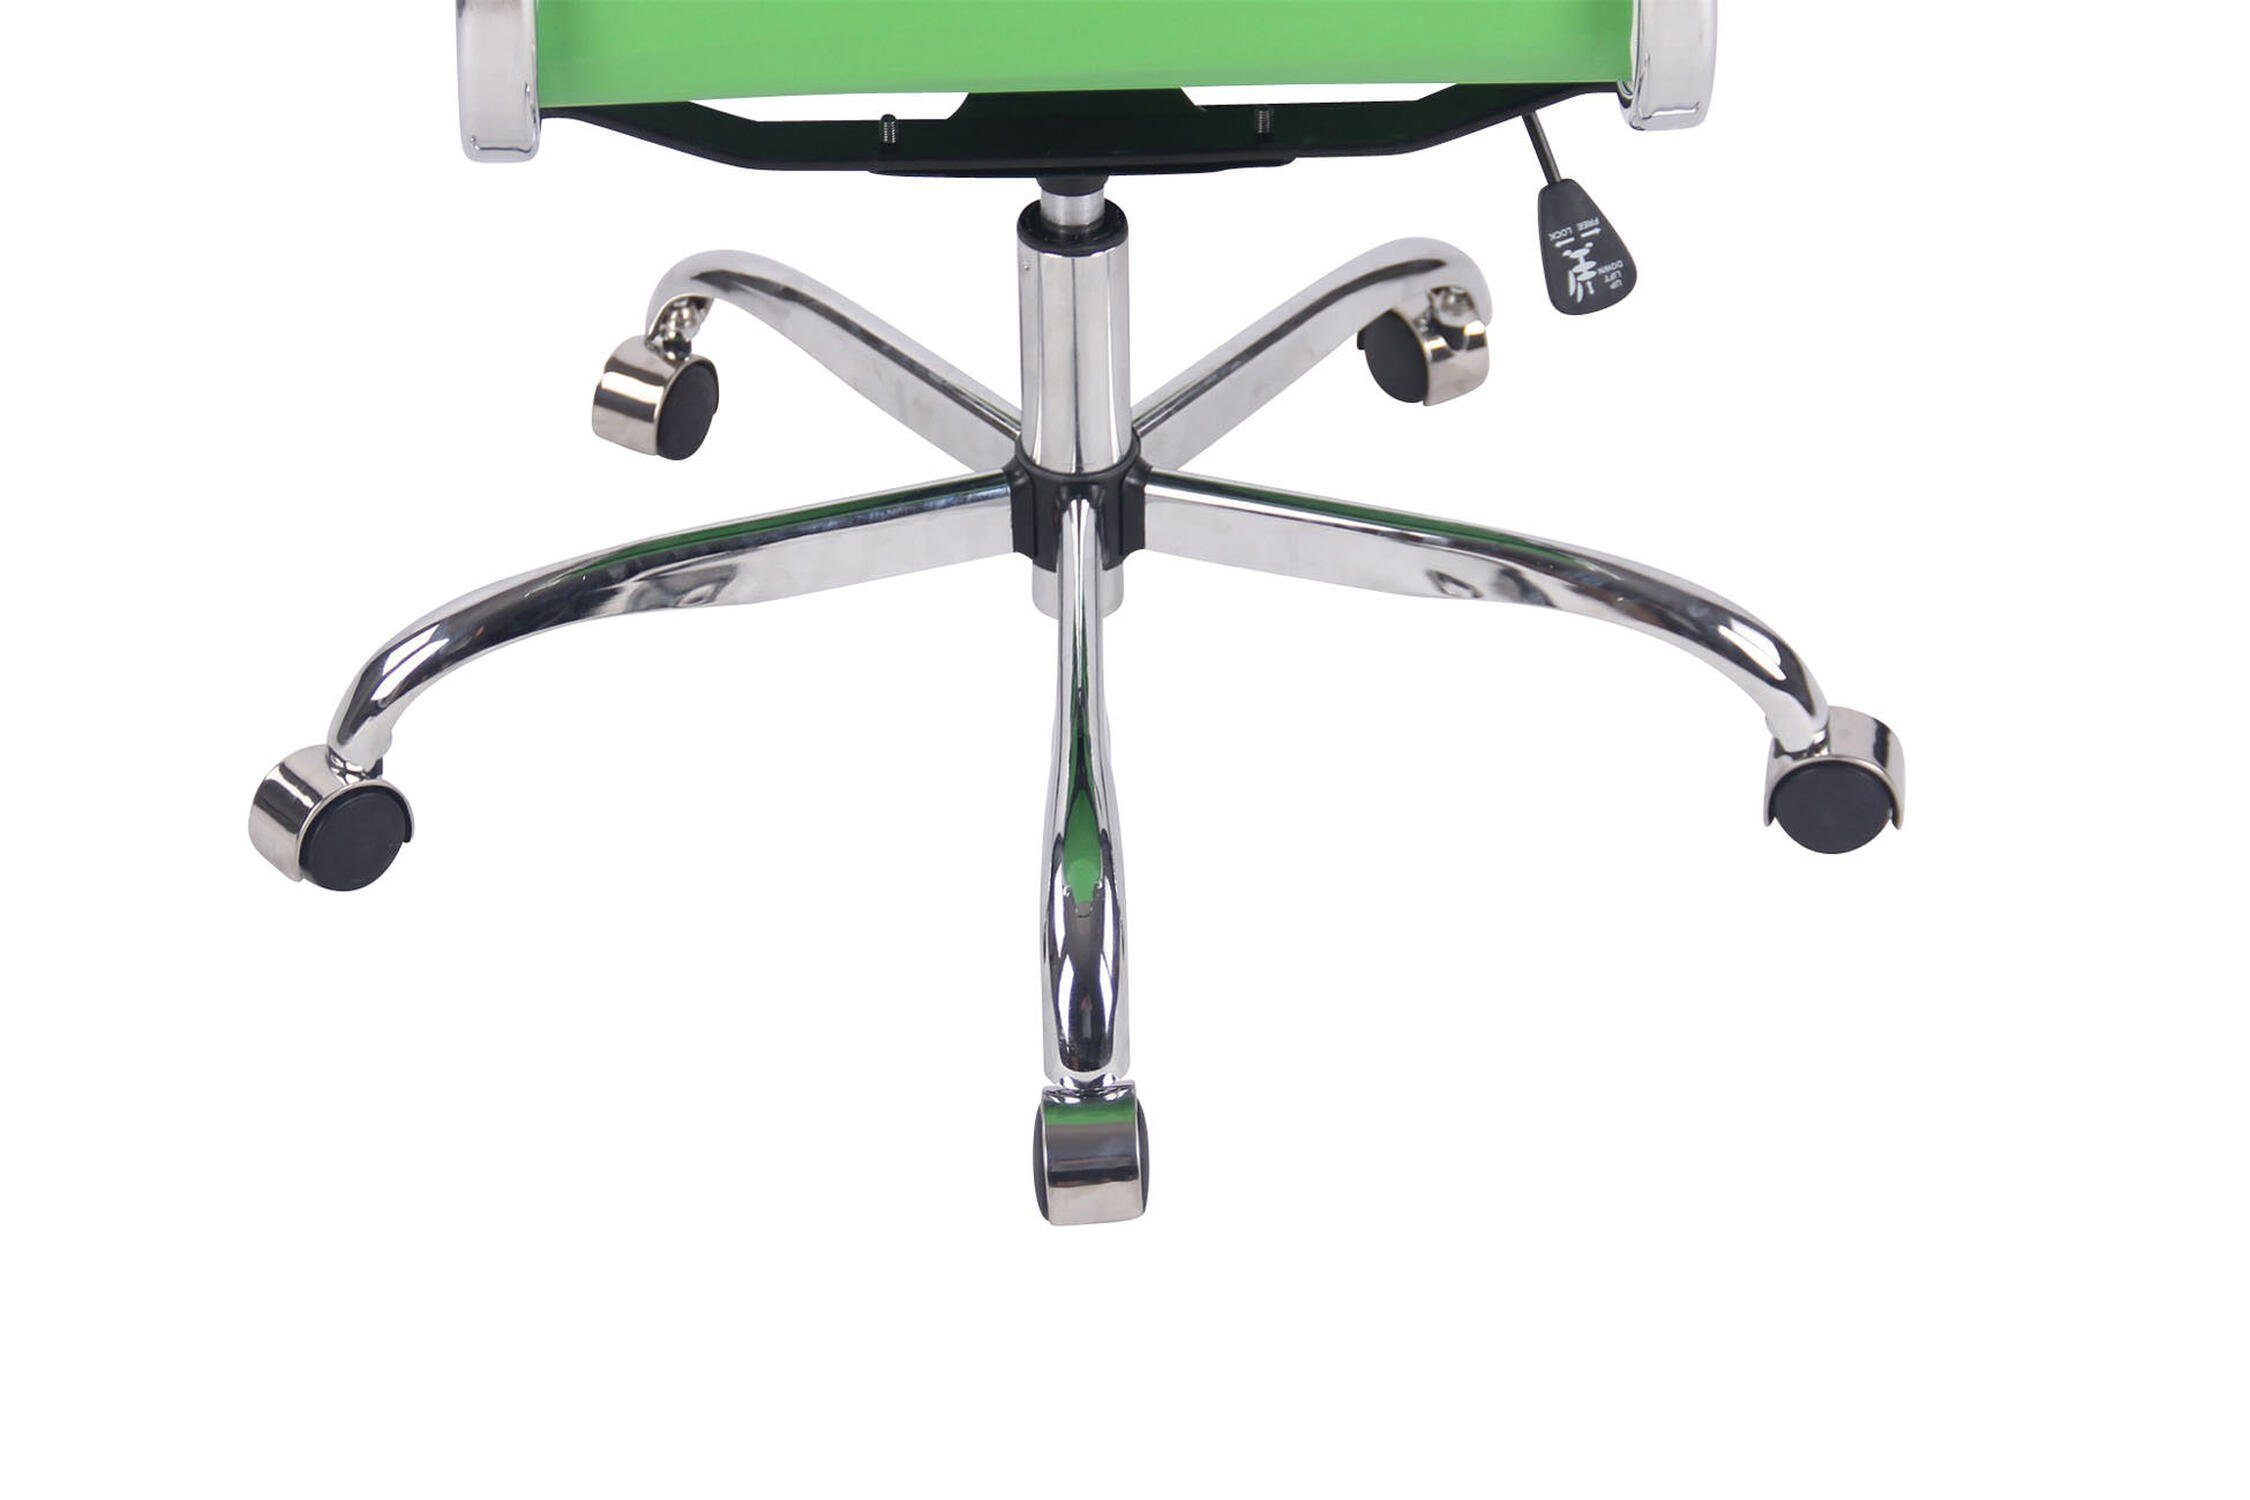 ergonomisch Gestell: Chefsessel, Sitzfläche: Rückenlehne Bürostuhl bequemer - TPFLiving XXL), Beta geformter grün Drehstuhl, chrom Bürostuhl Kunstleder (Schreibtischstuhl, Metall mit